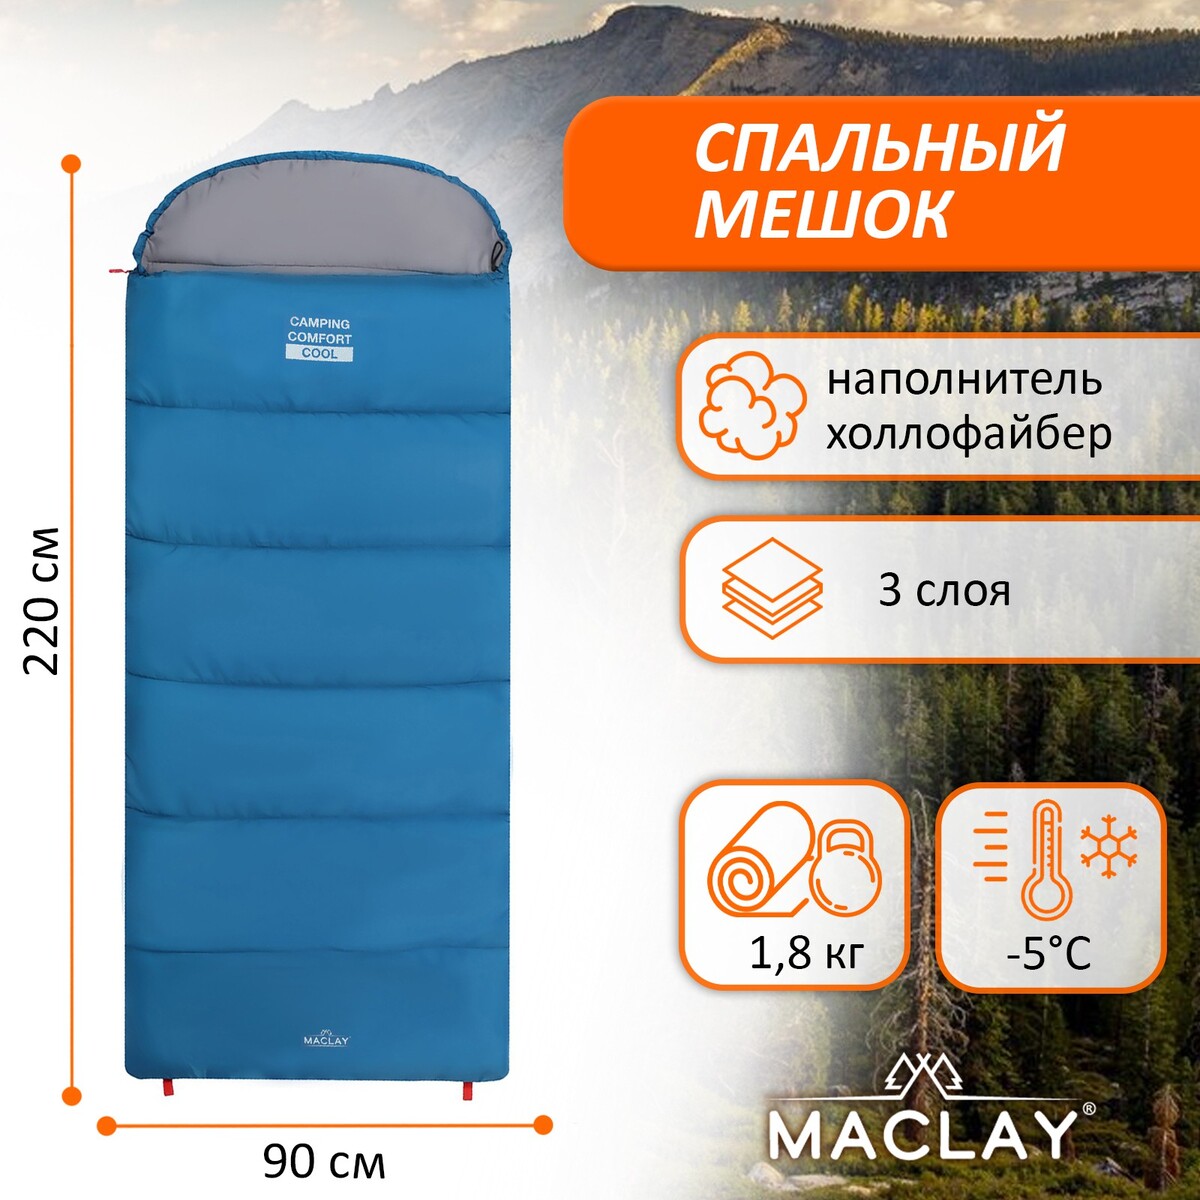 Спальный мешок maclay camping comfort cool, 3-слойный, правый, 220х90 см, -5/+10°с спальный мешок maclay camping comfort cold 4 слойный правый 220х90 см 10 5°с